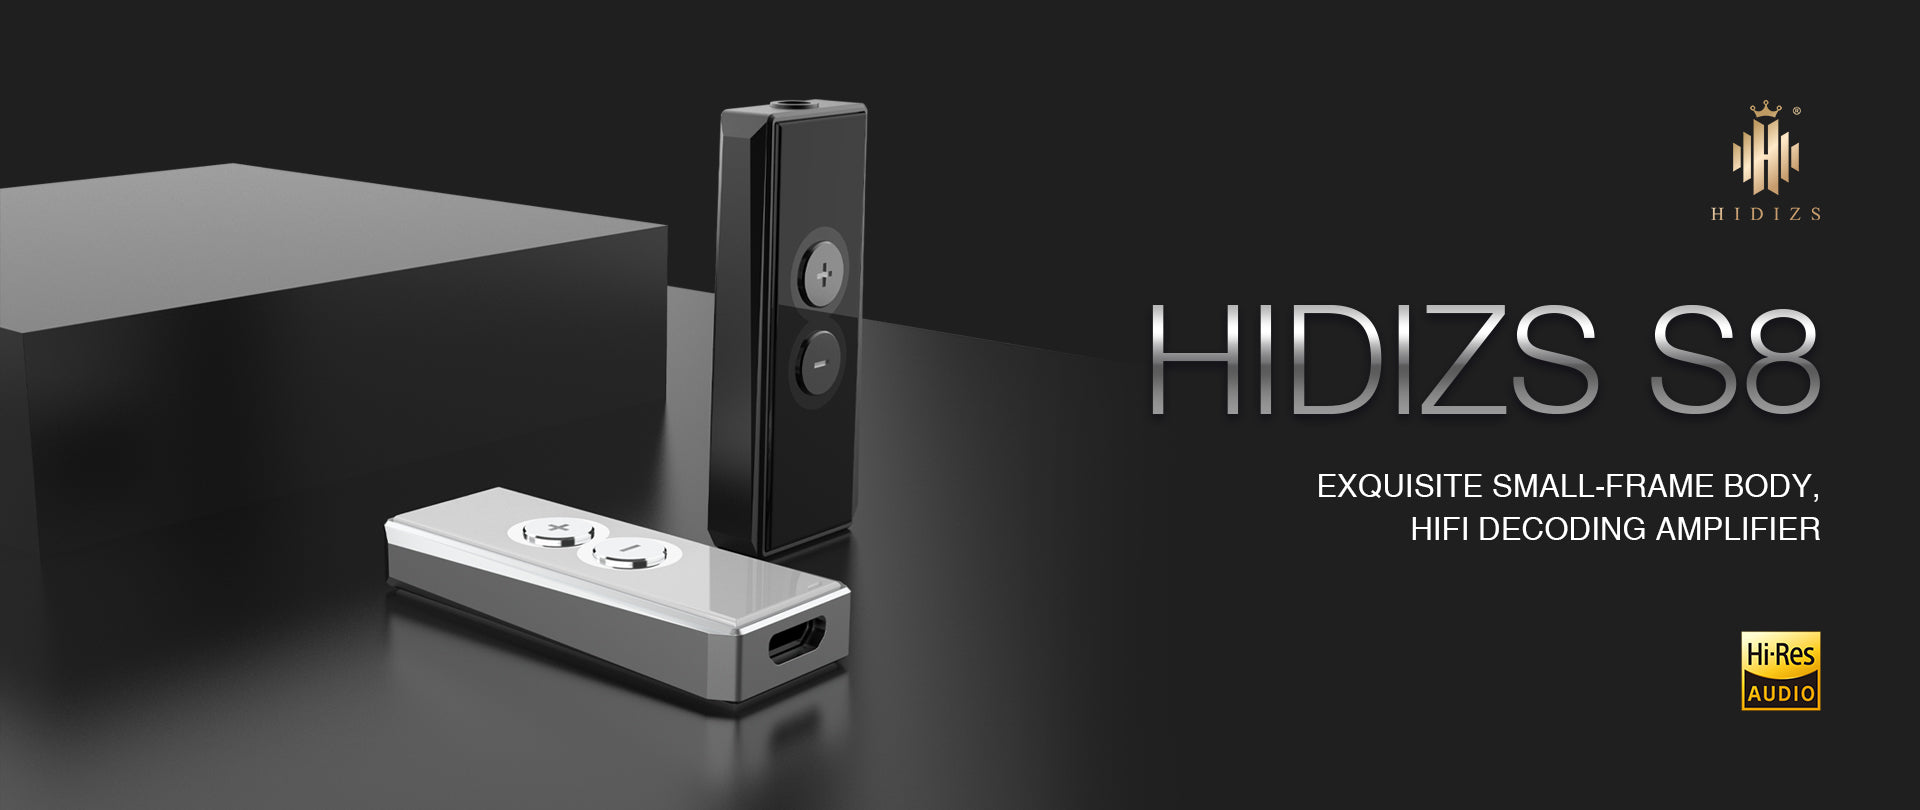 HIDIZS-S8-PC-23030901